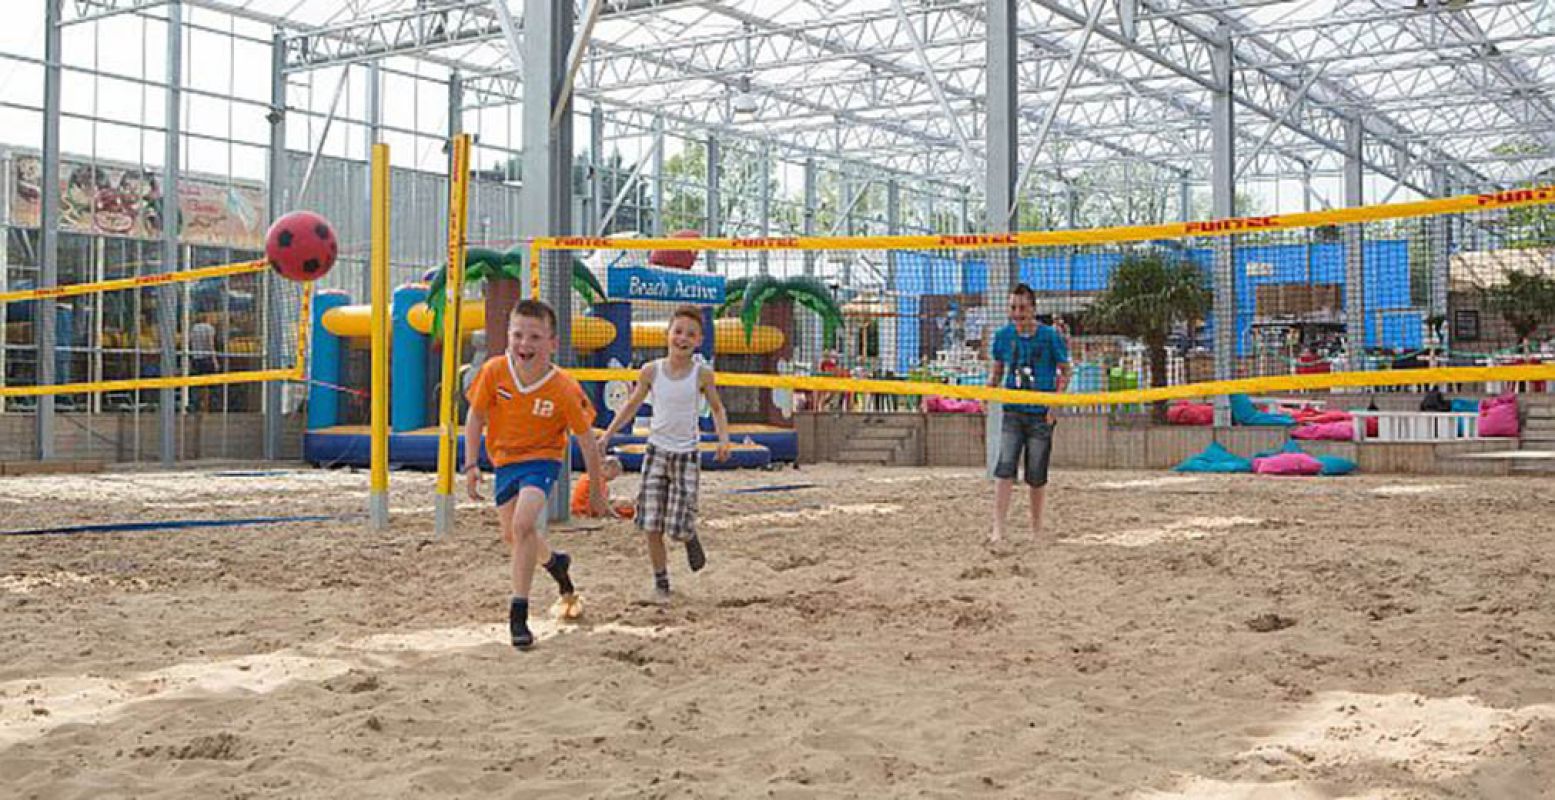 Ren achter die bal aan! Misschien winnen de spelers in oranje shirts deze strijd wél. Foto: Happy Fun Beach.